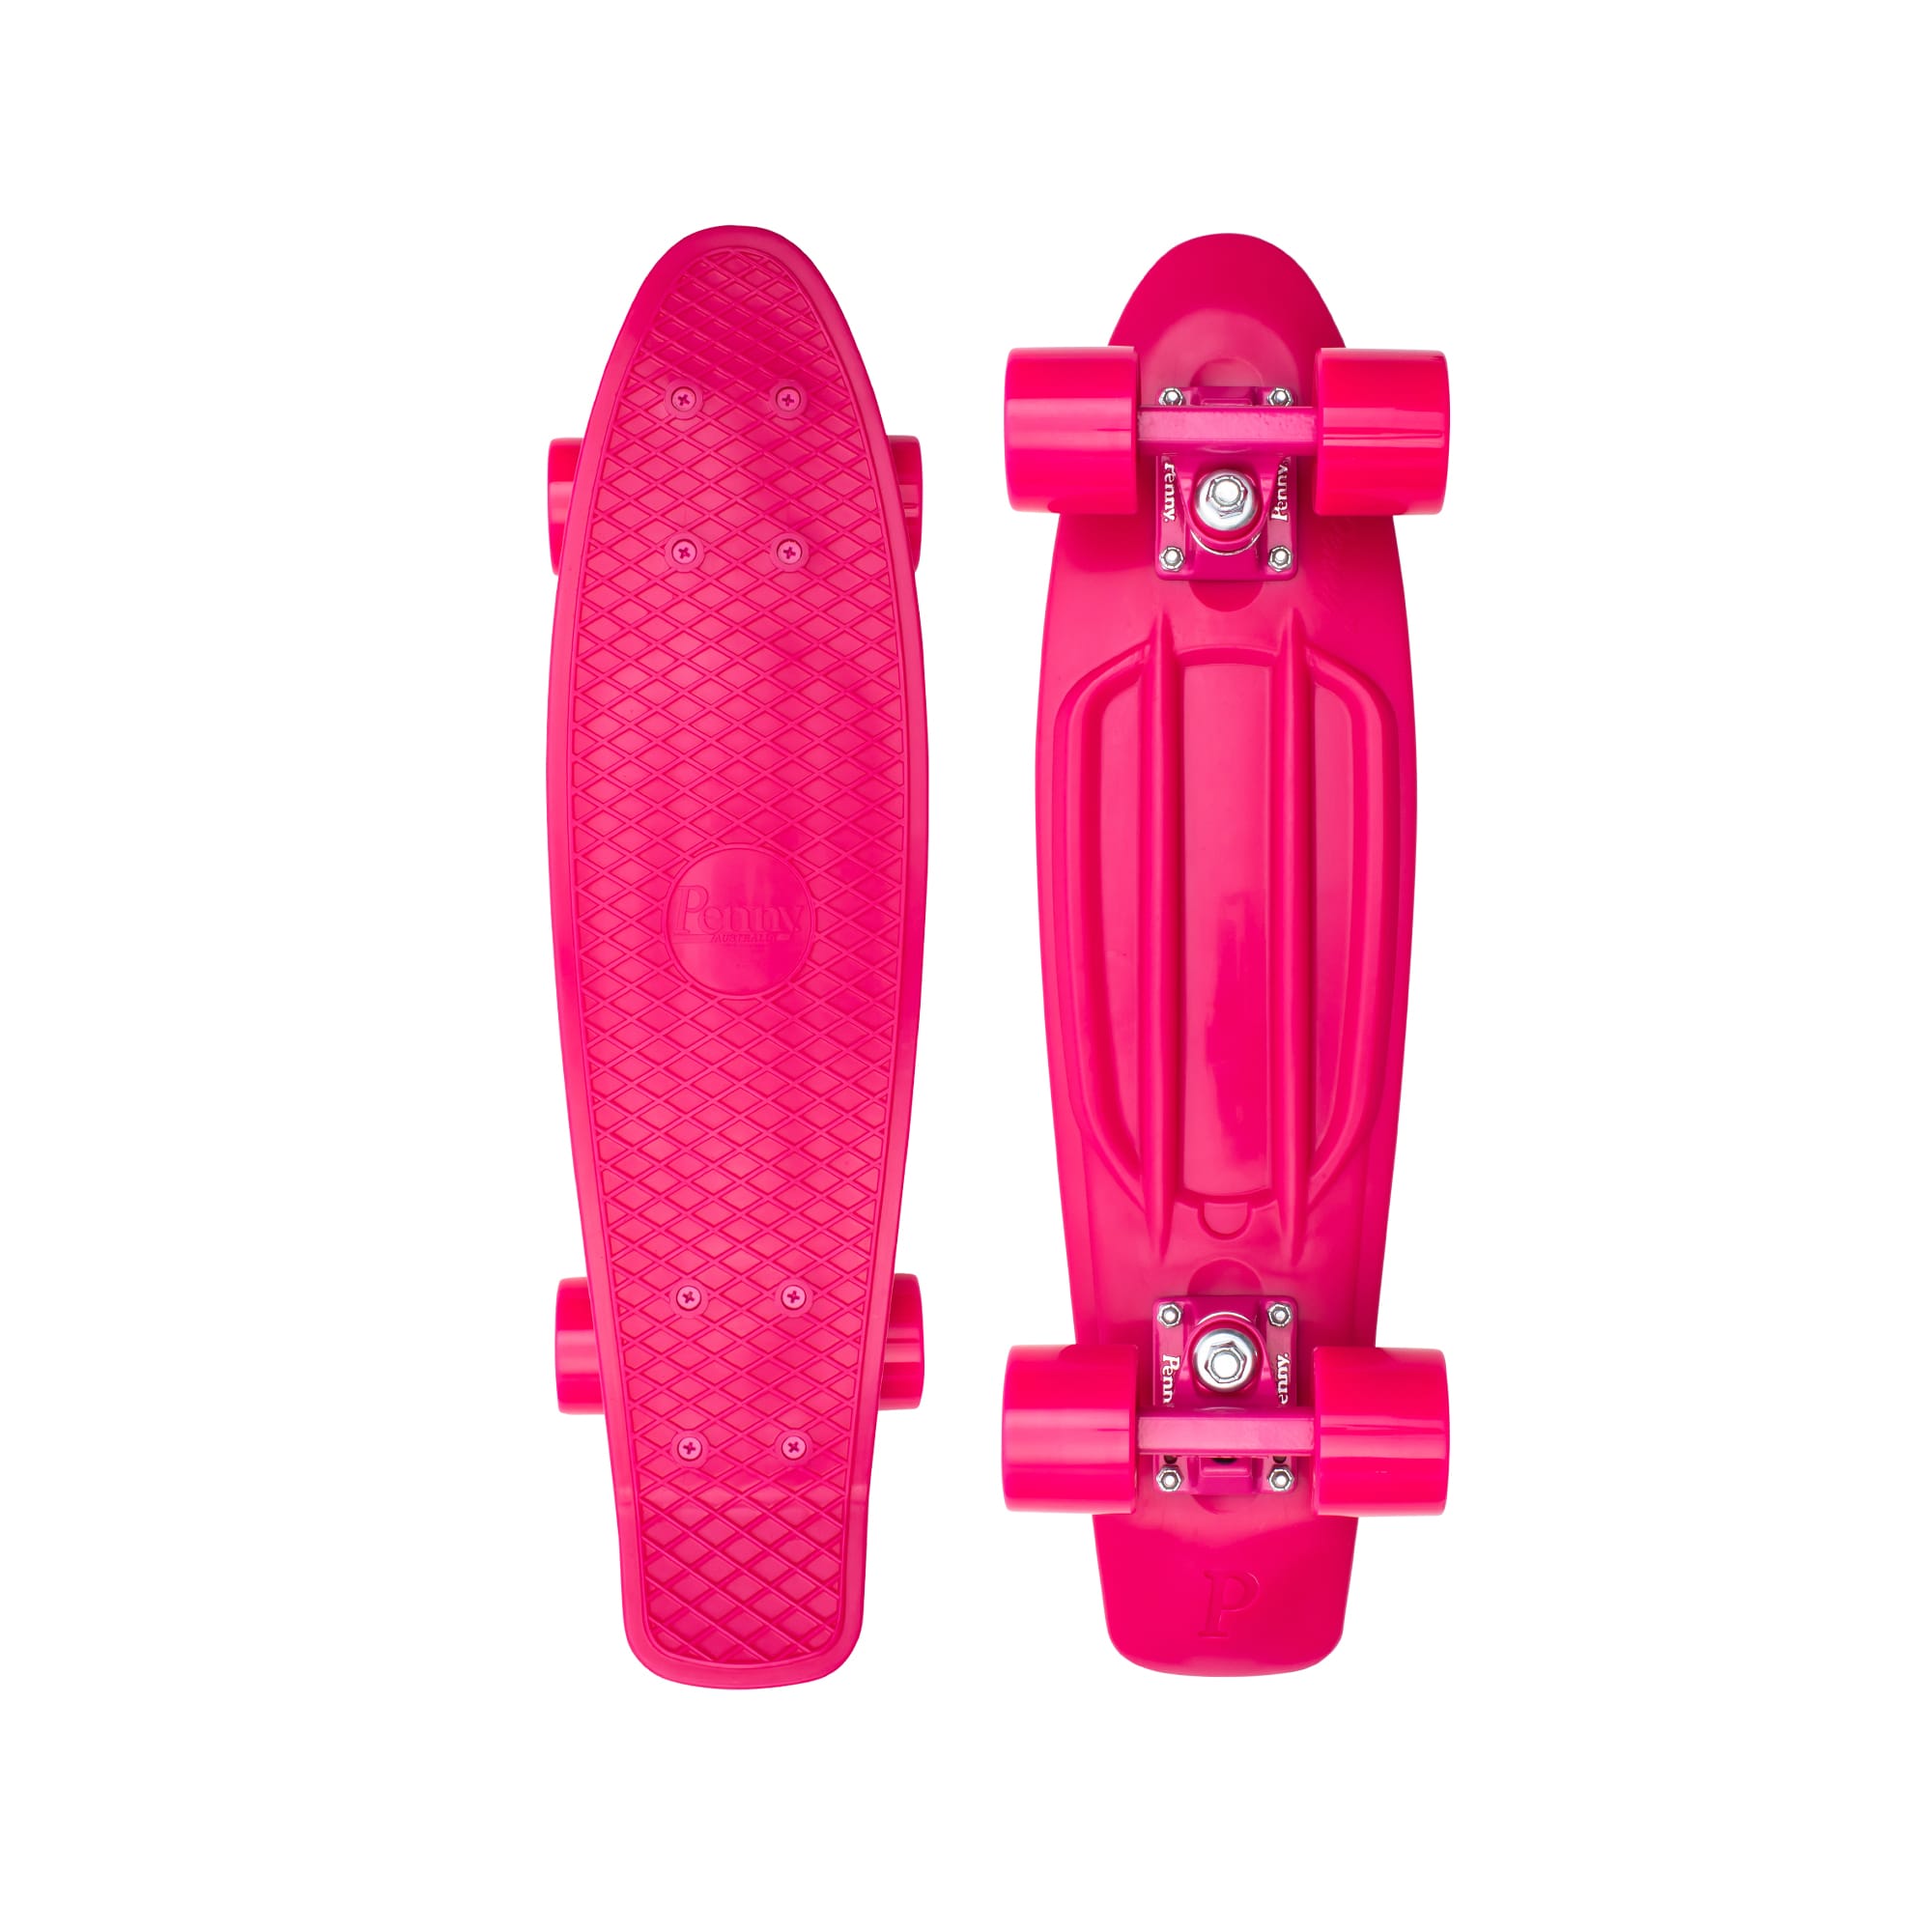 uitvinden Smelten Omgeving Pink 22" Penny Board Complete Cruiser Skateboard by Penny Skateboards